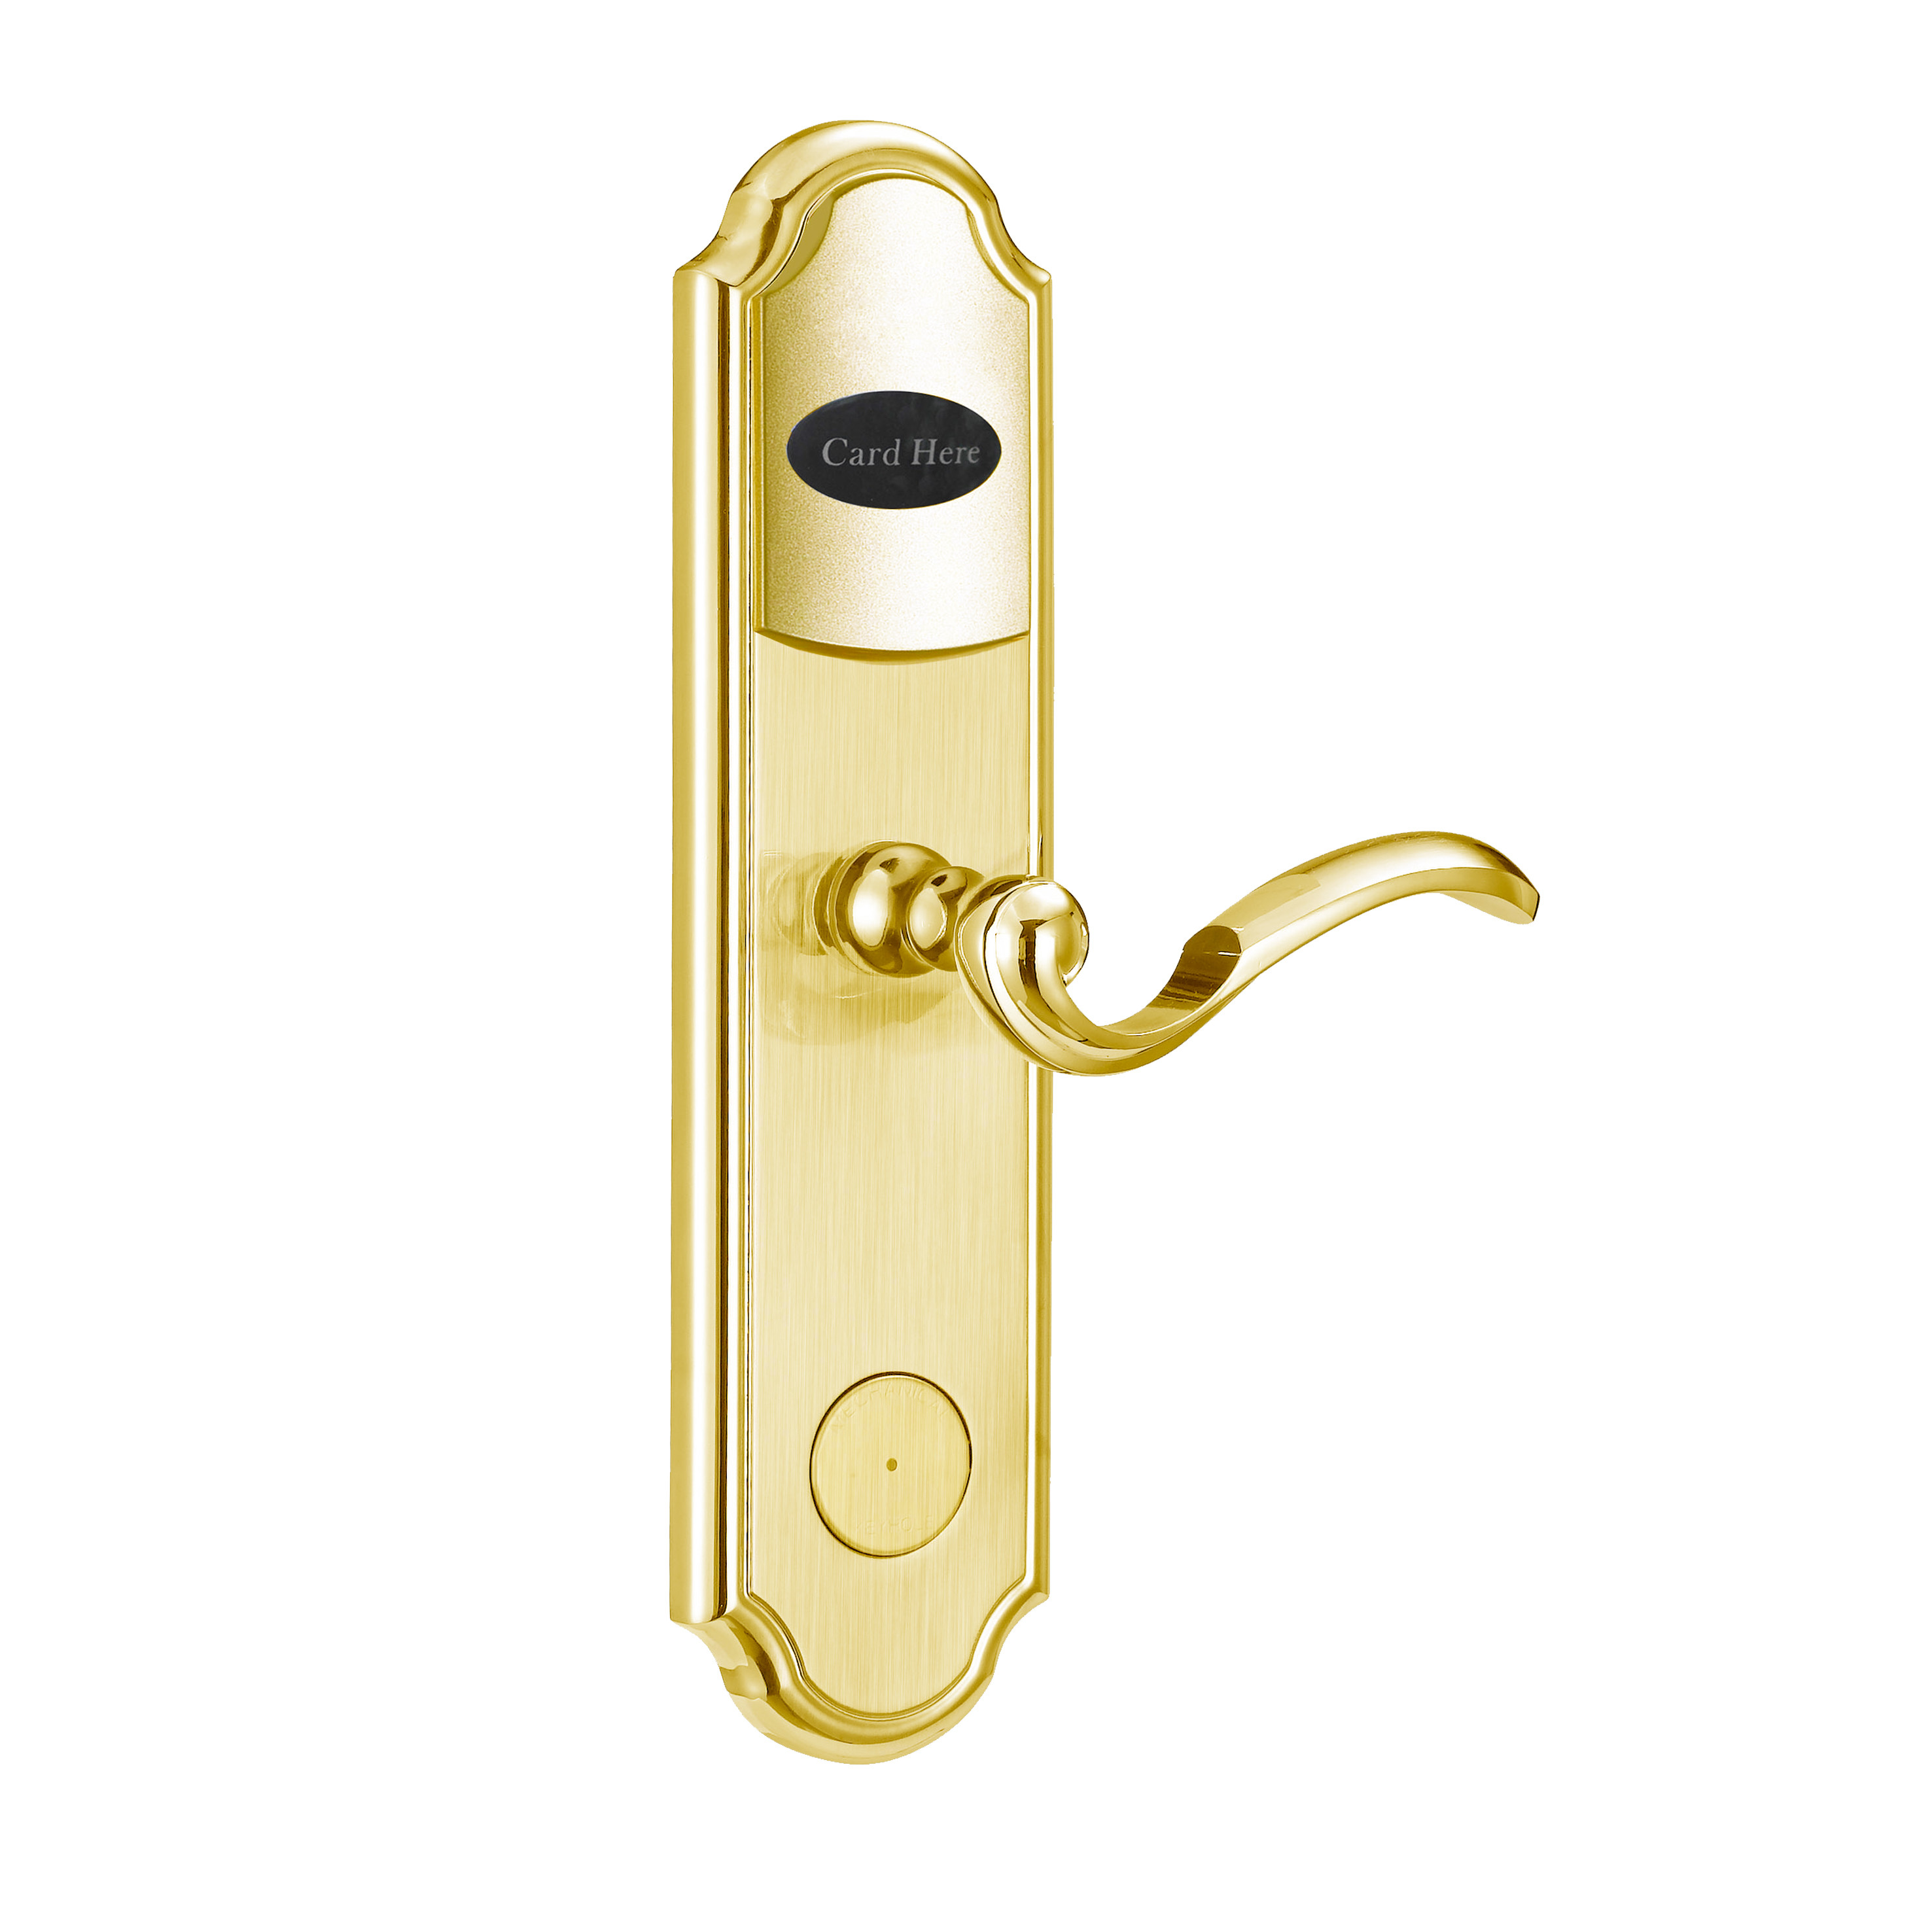  Security Rfid Door Lock Access Control System , Keyless Front Door Lock Intelligent Manufactures